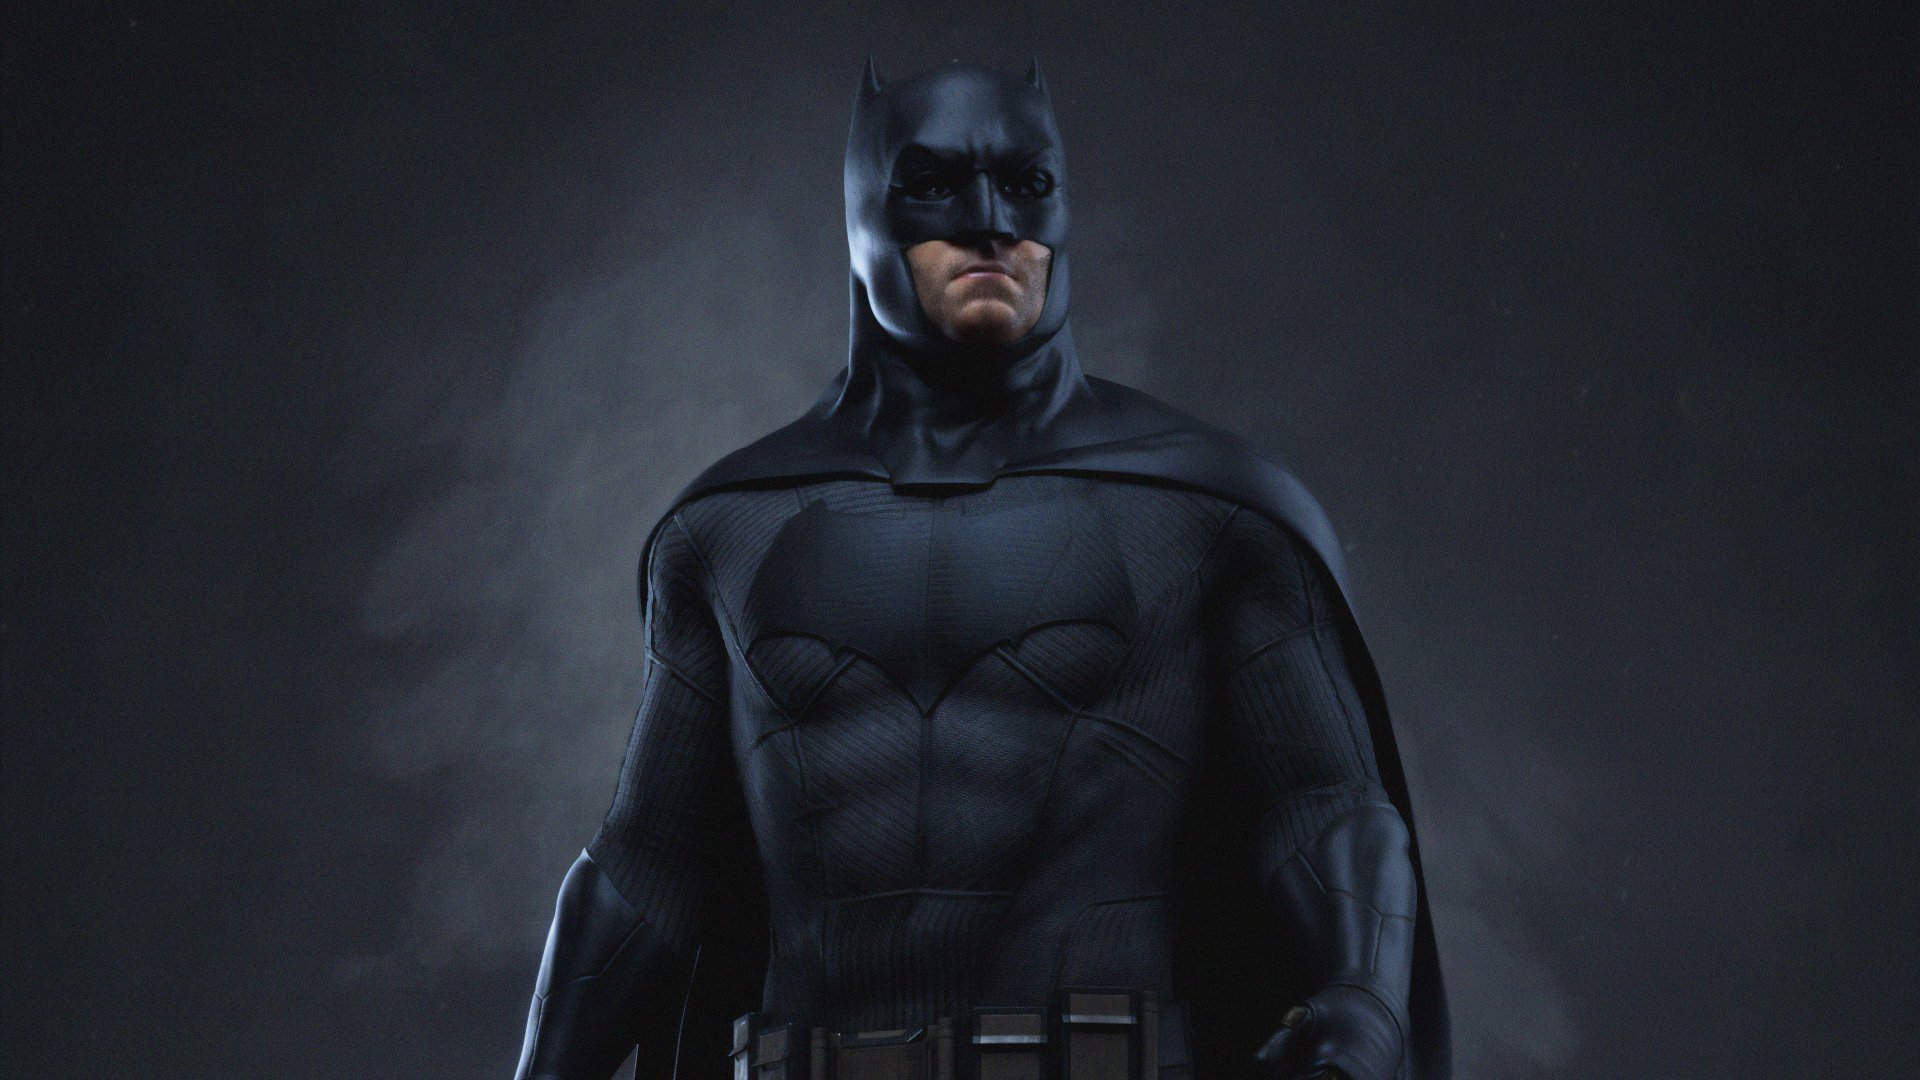 Batman 4k Ultra HD Wallpaper | Hintergrund | 3840x2160 | ID:1030019